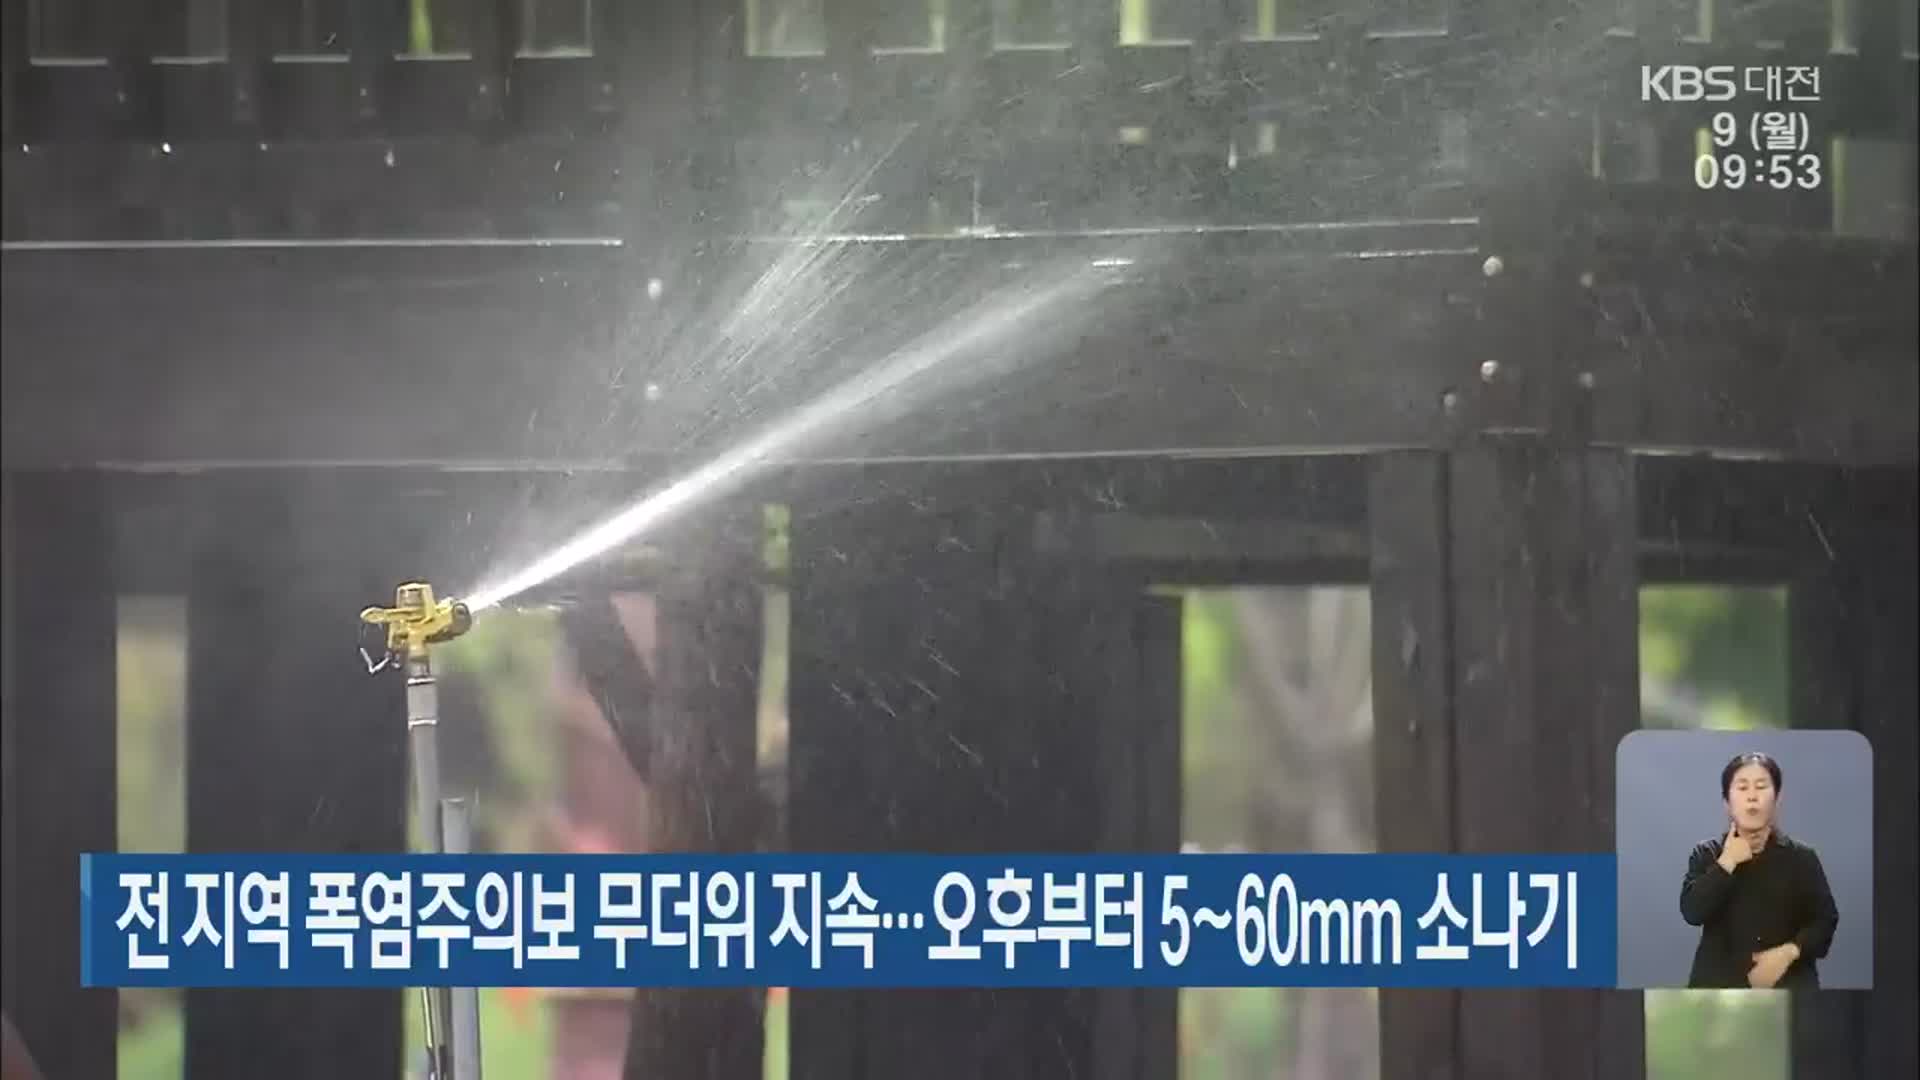 대전·세종·충남 전 지역 폭염주의보…오후부터 5~60㎜ 소나기